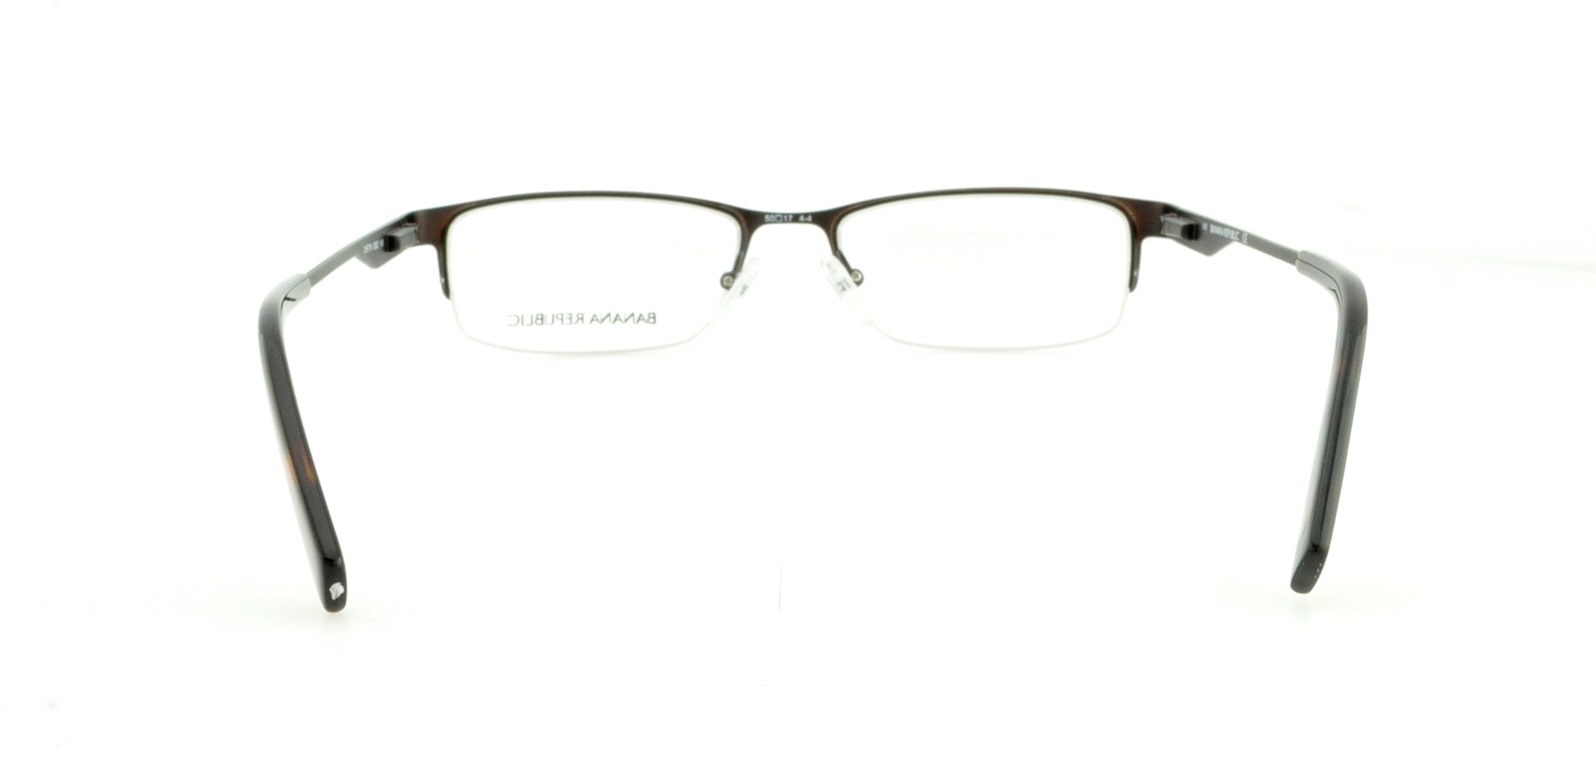 Designer Frames Outlet. Banana Republic Eyeglasses CHET/N